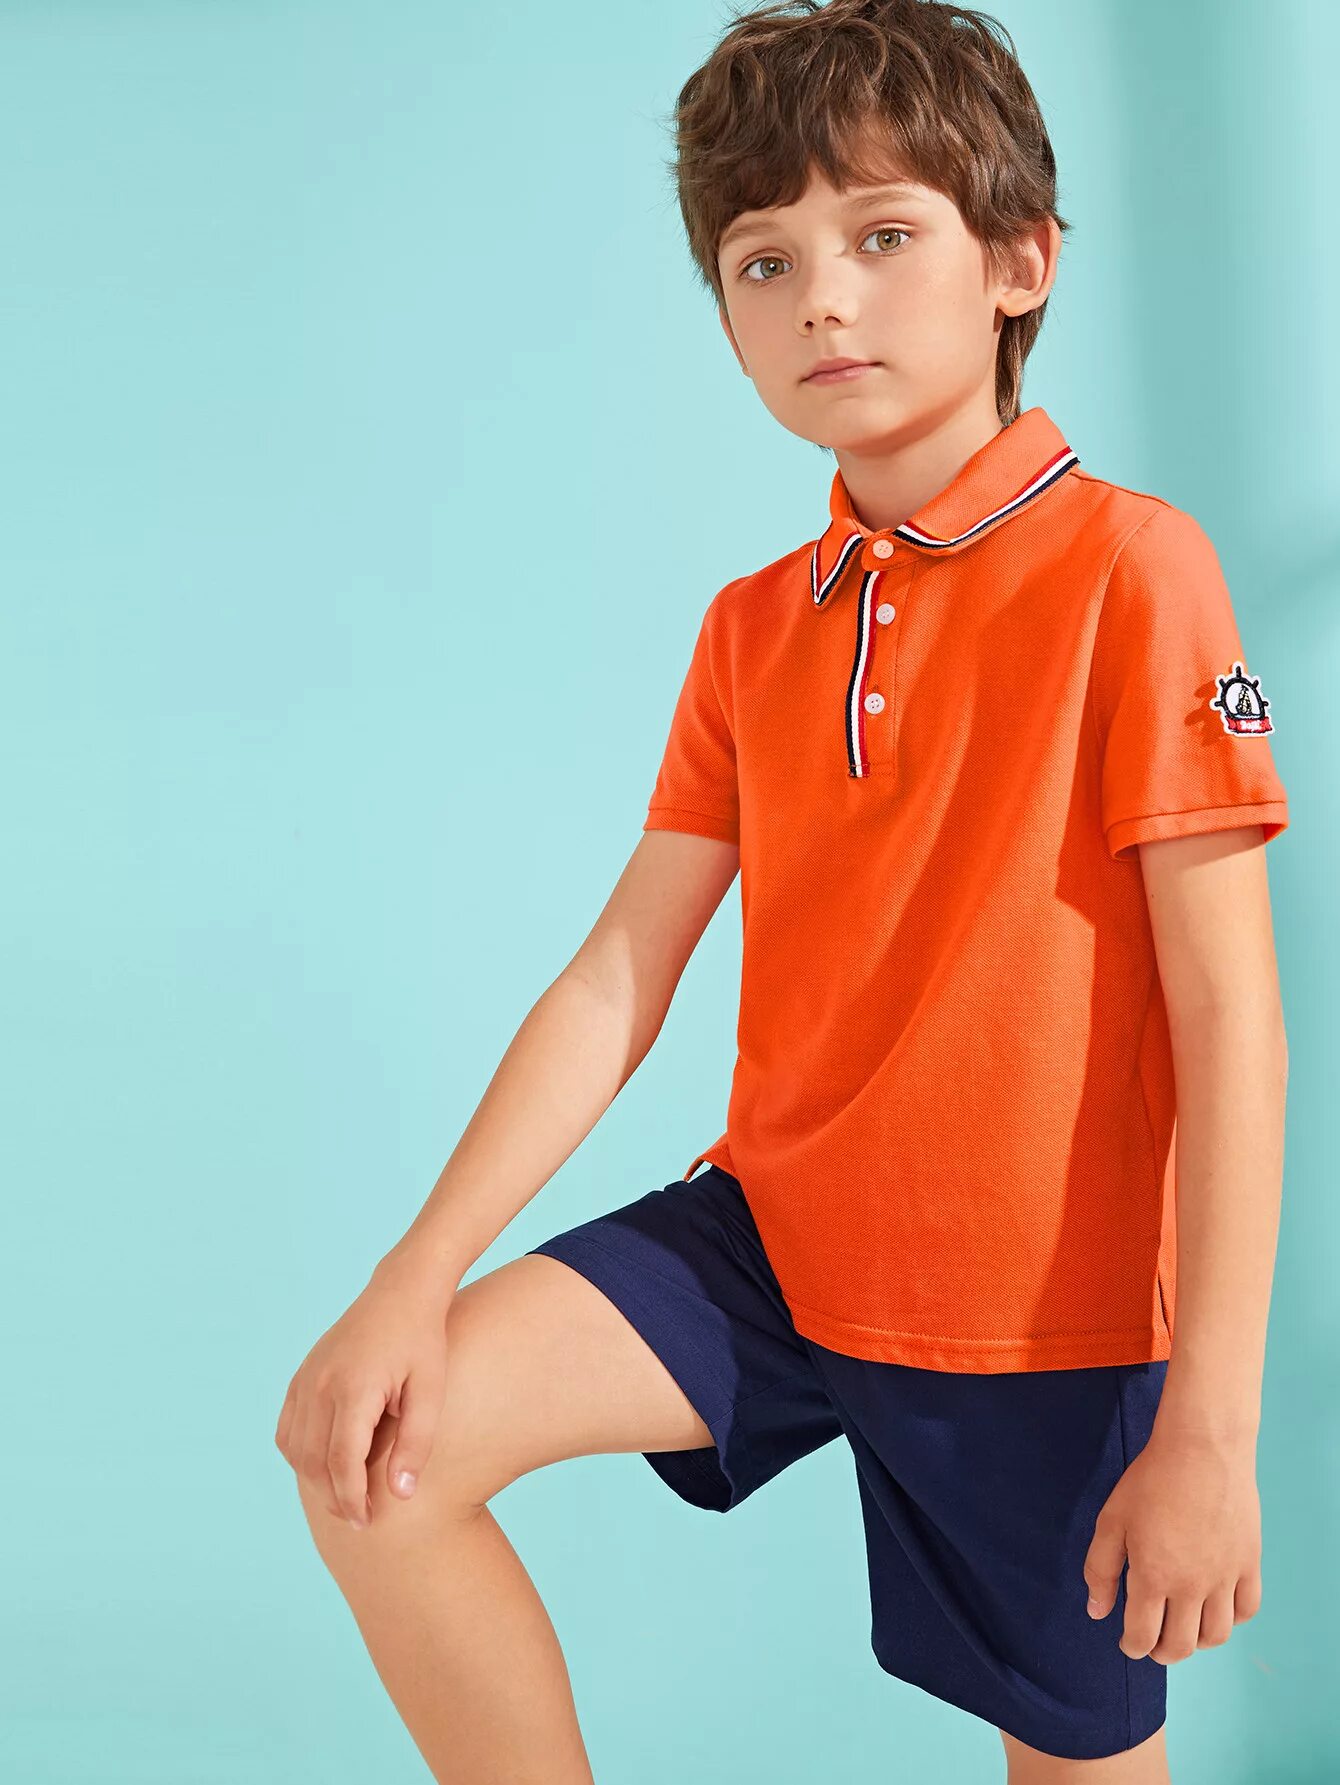 Шорты для мальчика оранжевые. Юноша в оранжевом. Оранжевая одежда для мальчиков. Мальчик 7 лет в оранжевых. Boys polo